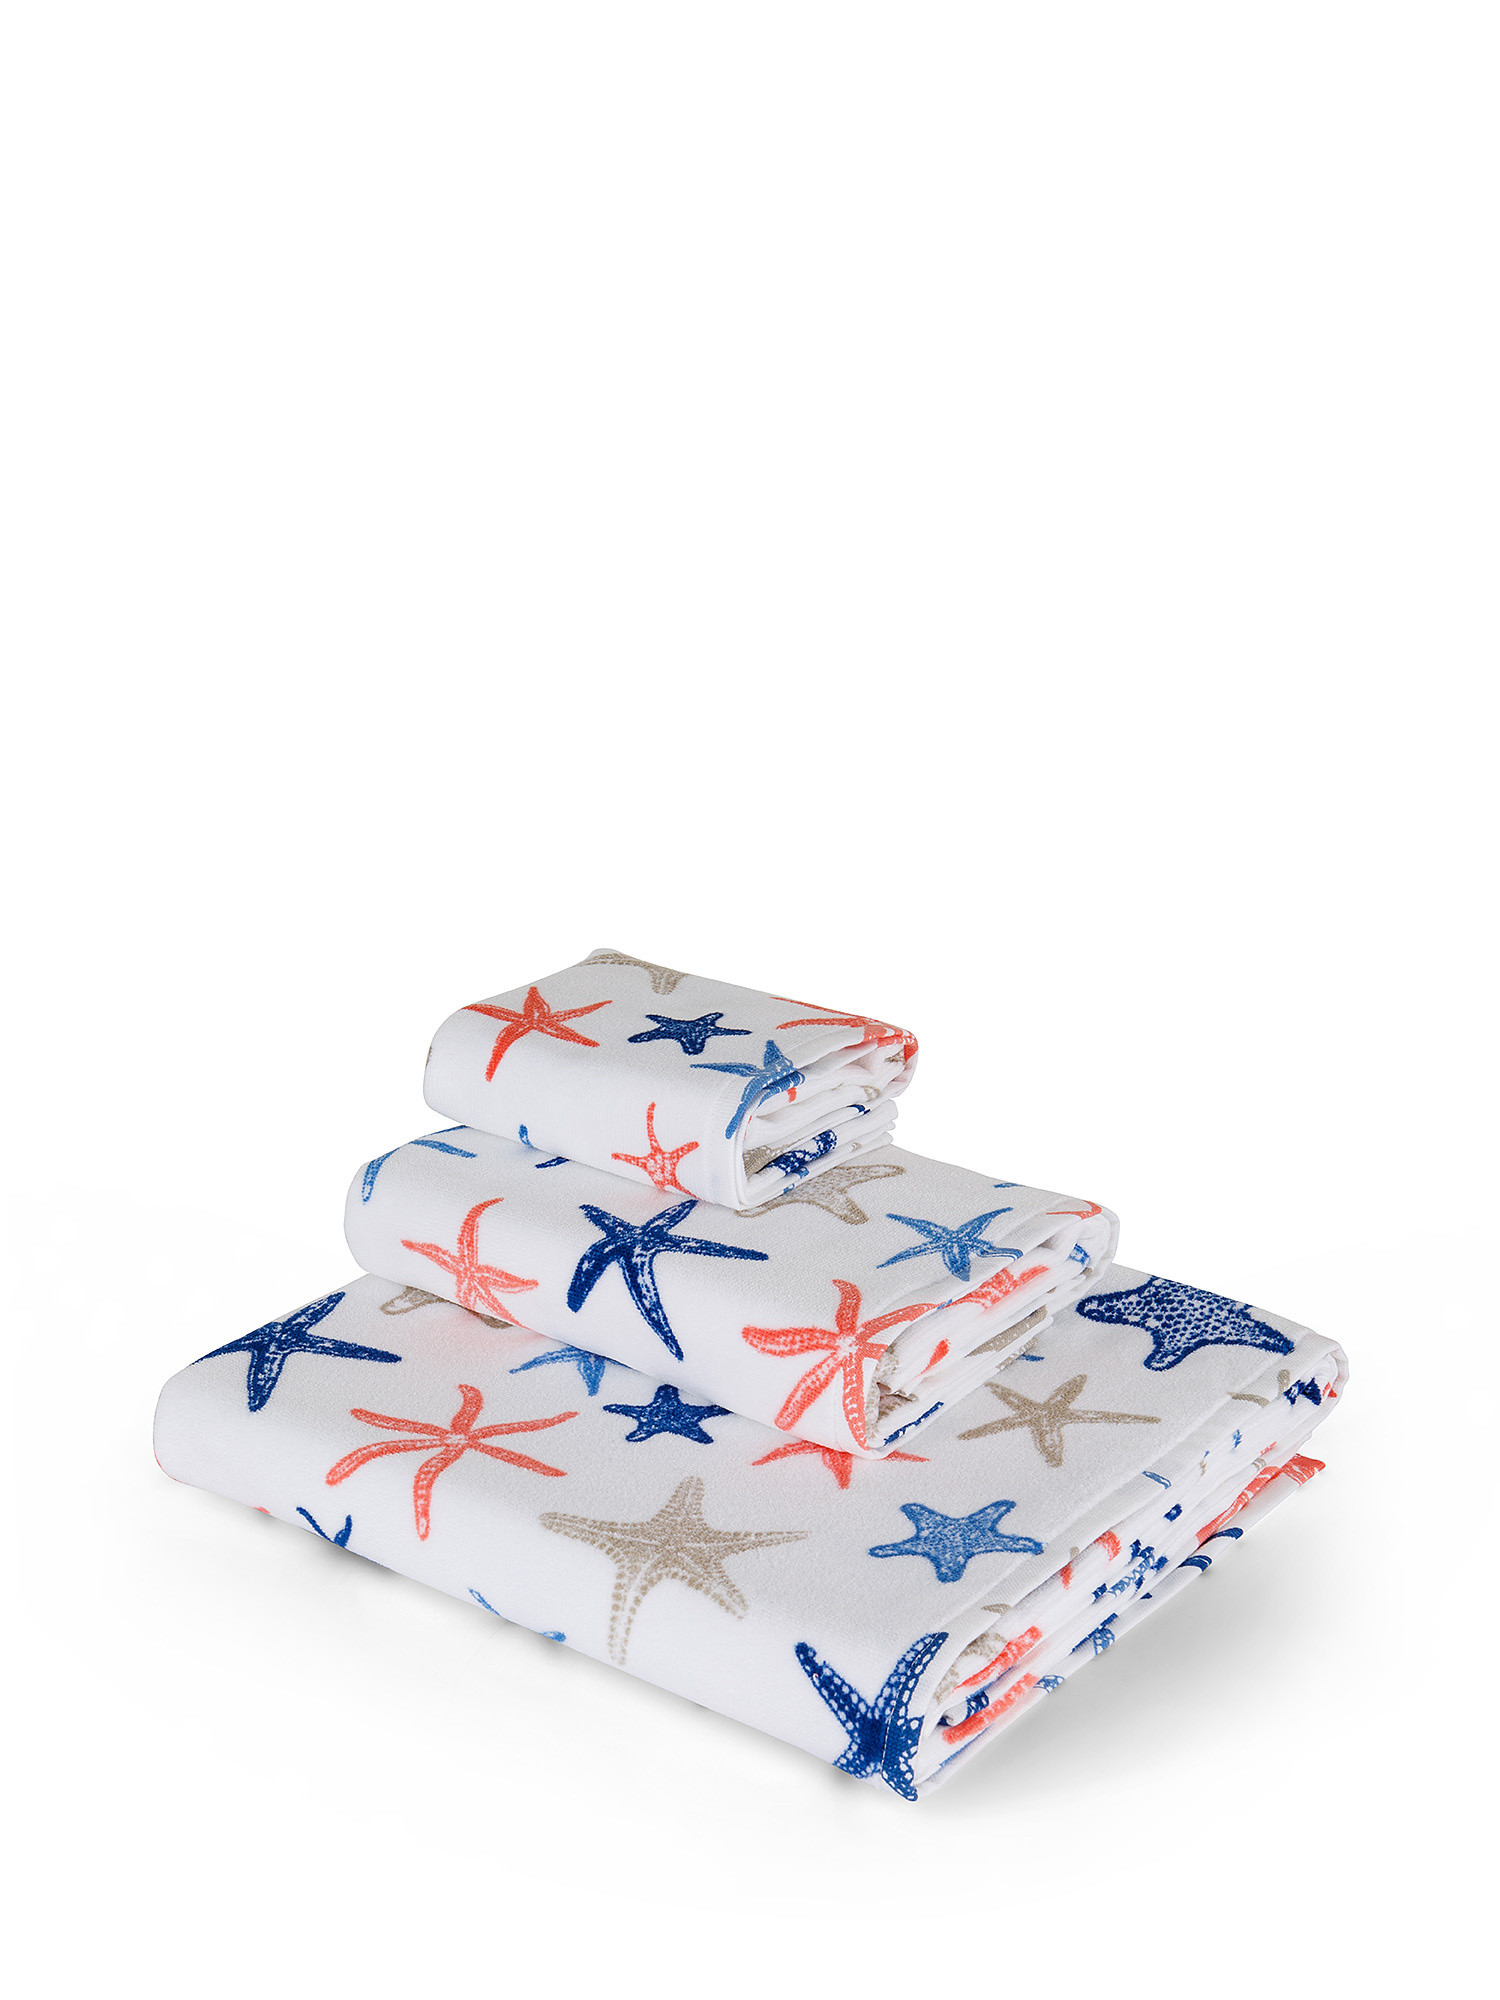 Asciugamano cotone velour motivo stelle marine, Bianco, large image number 0